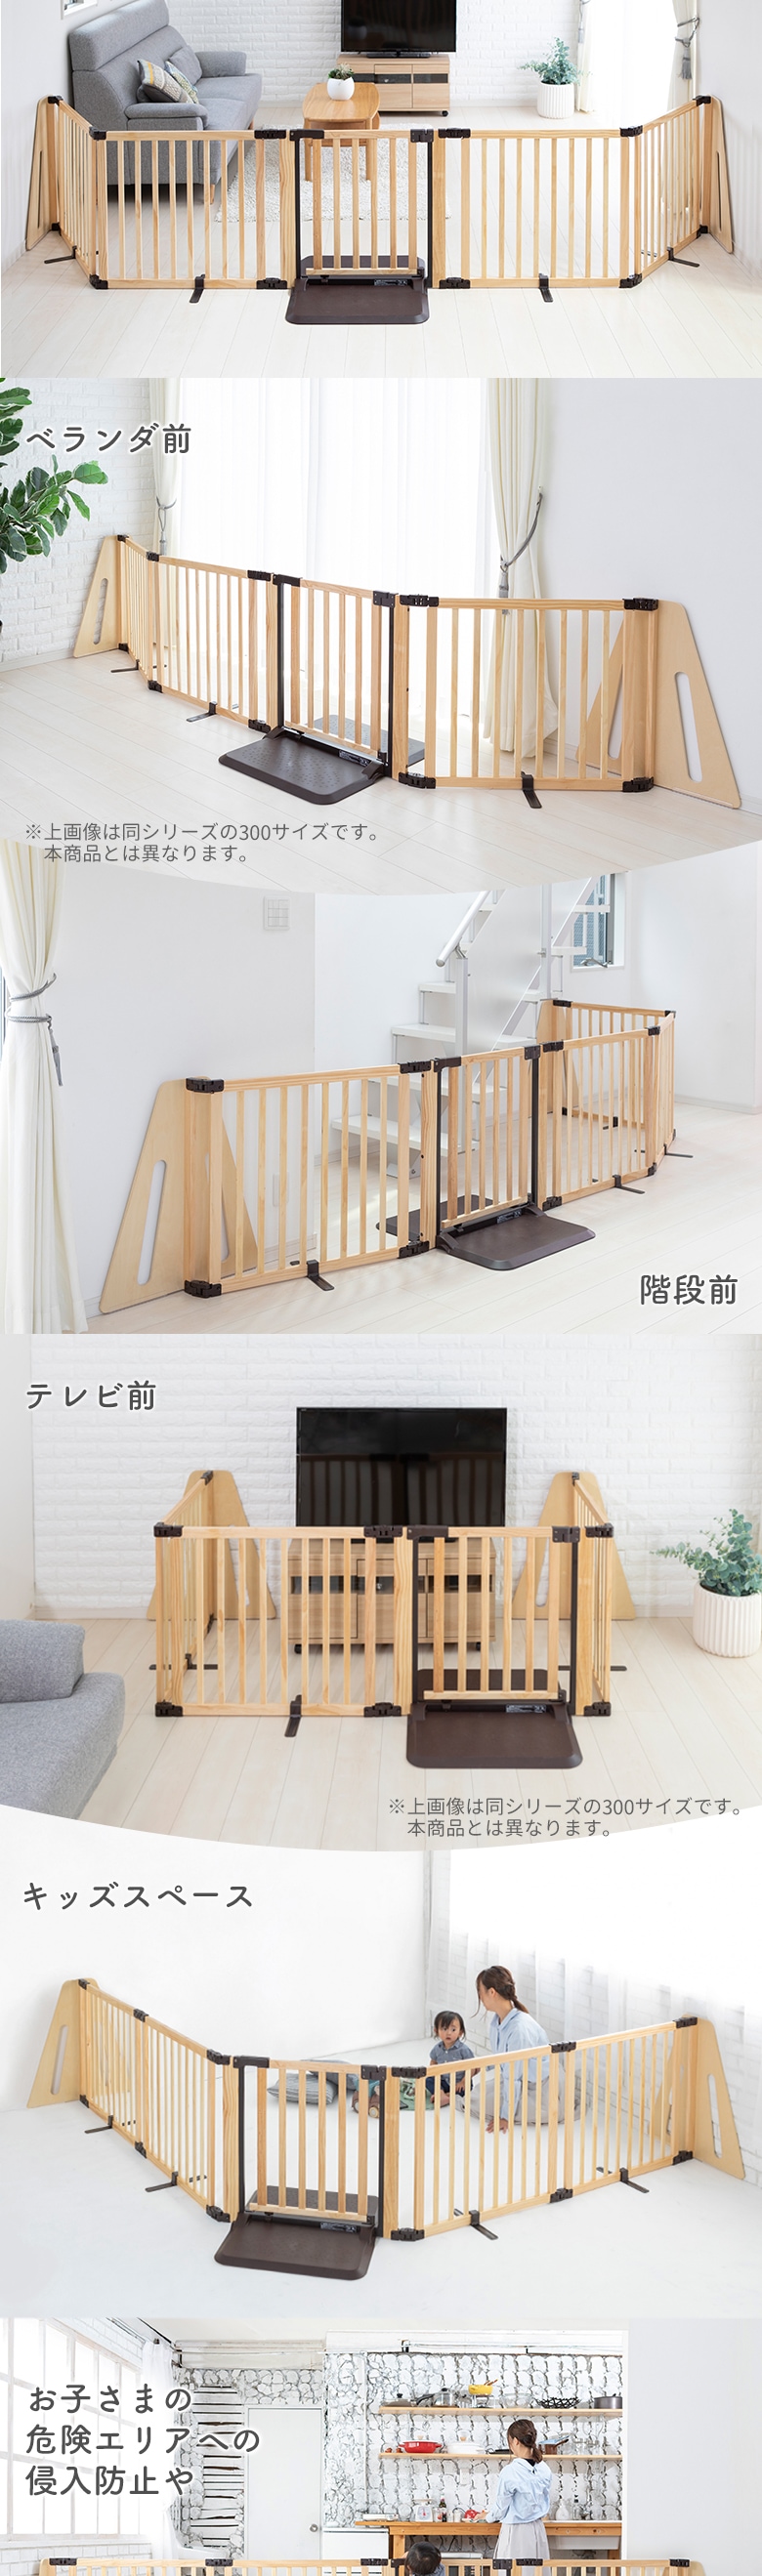 日本育児 木製パーテーション FLEX-Ⅱ400 【大型商品 代引き不可・日時 